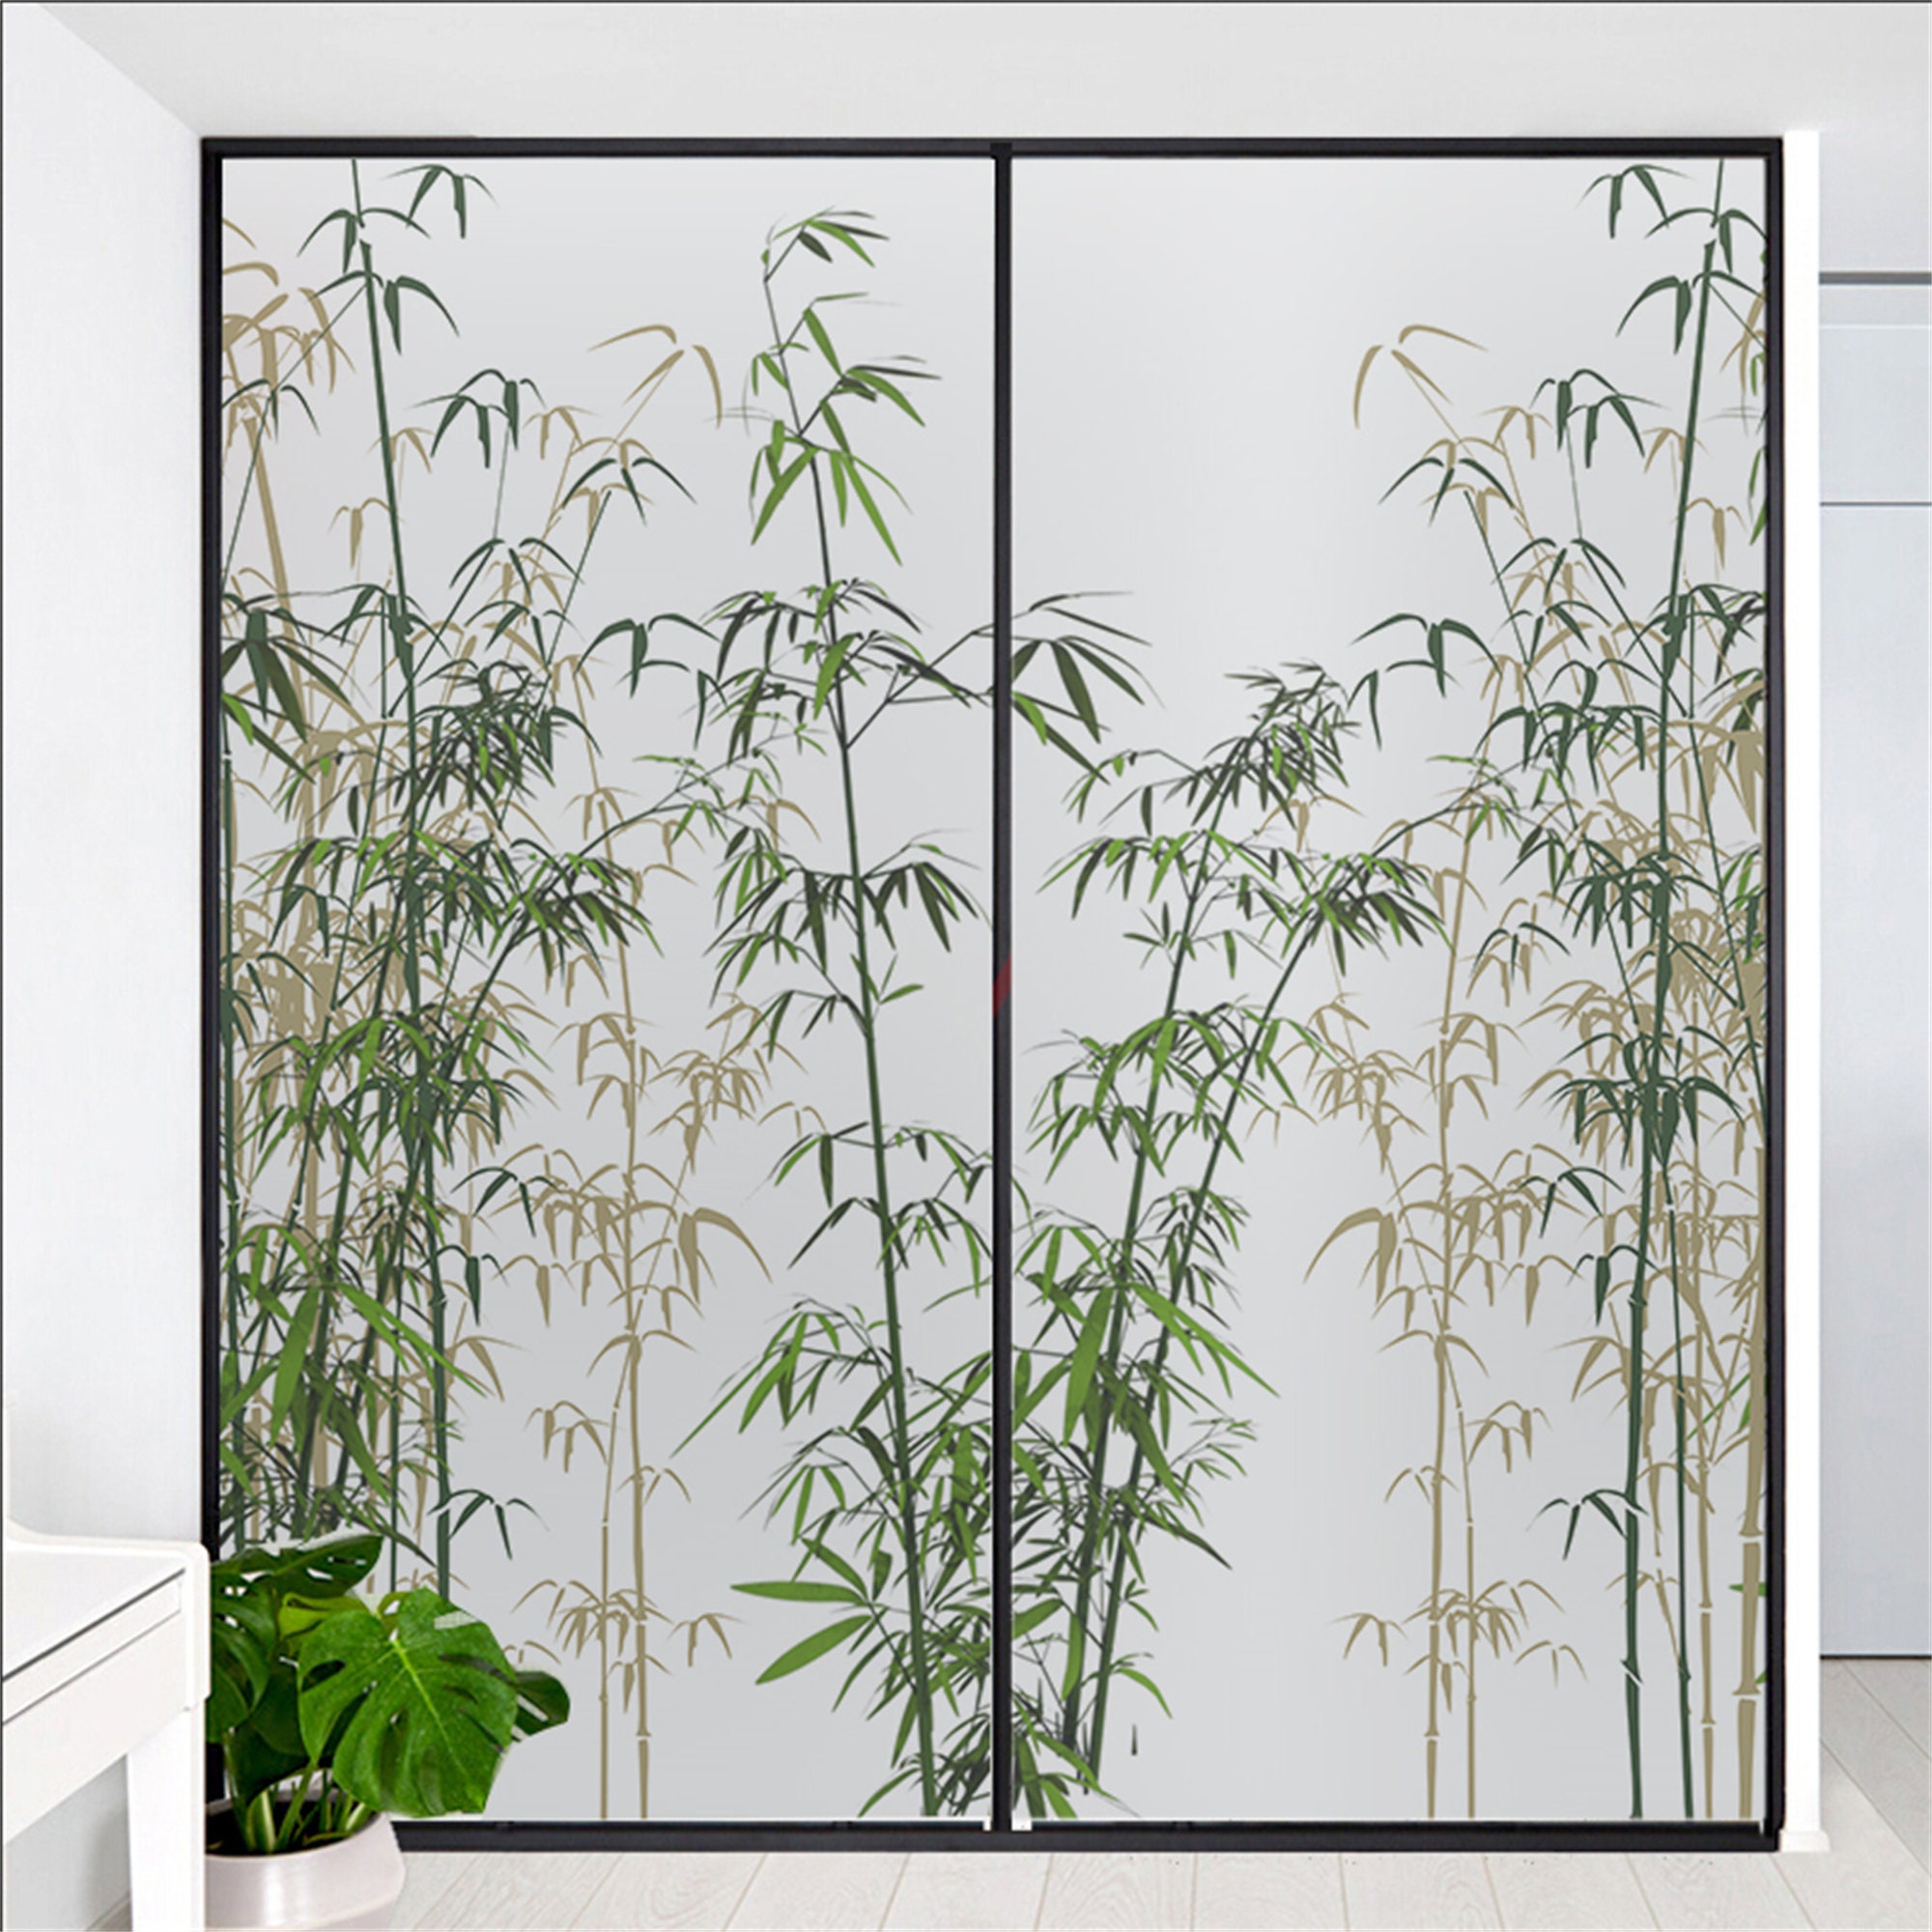 Dekorative Fensterfolie Sichtschutz Grüne Pflanze Bambus Static Cling  Fensteraufkleber Kein Kleber Mattierte Fensterfolien Fenster Tönungsfolie  Customsize - .de